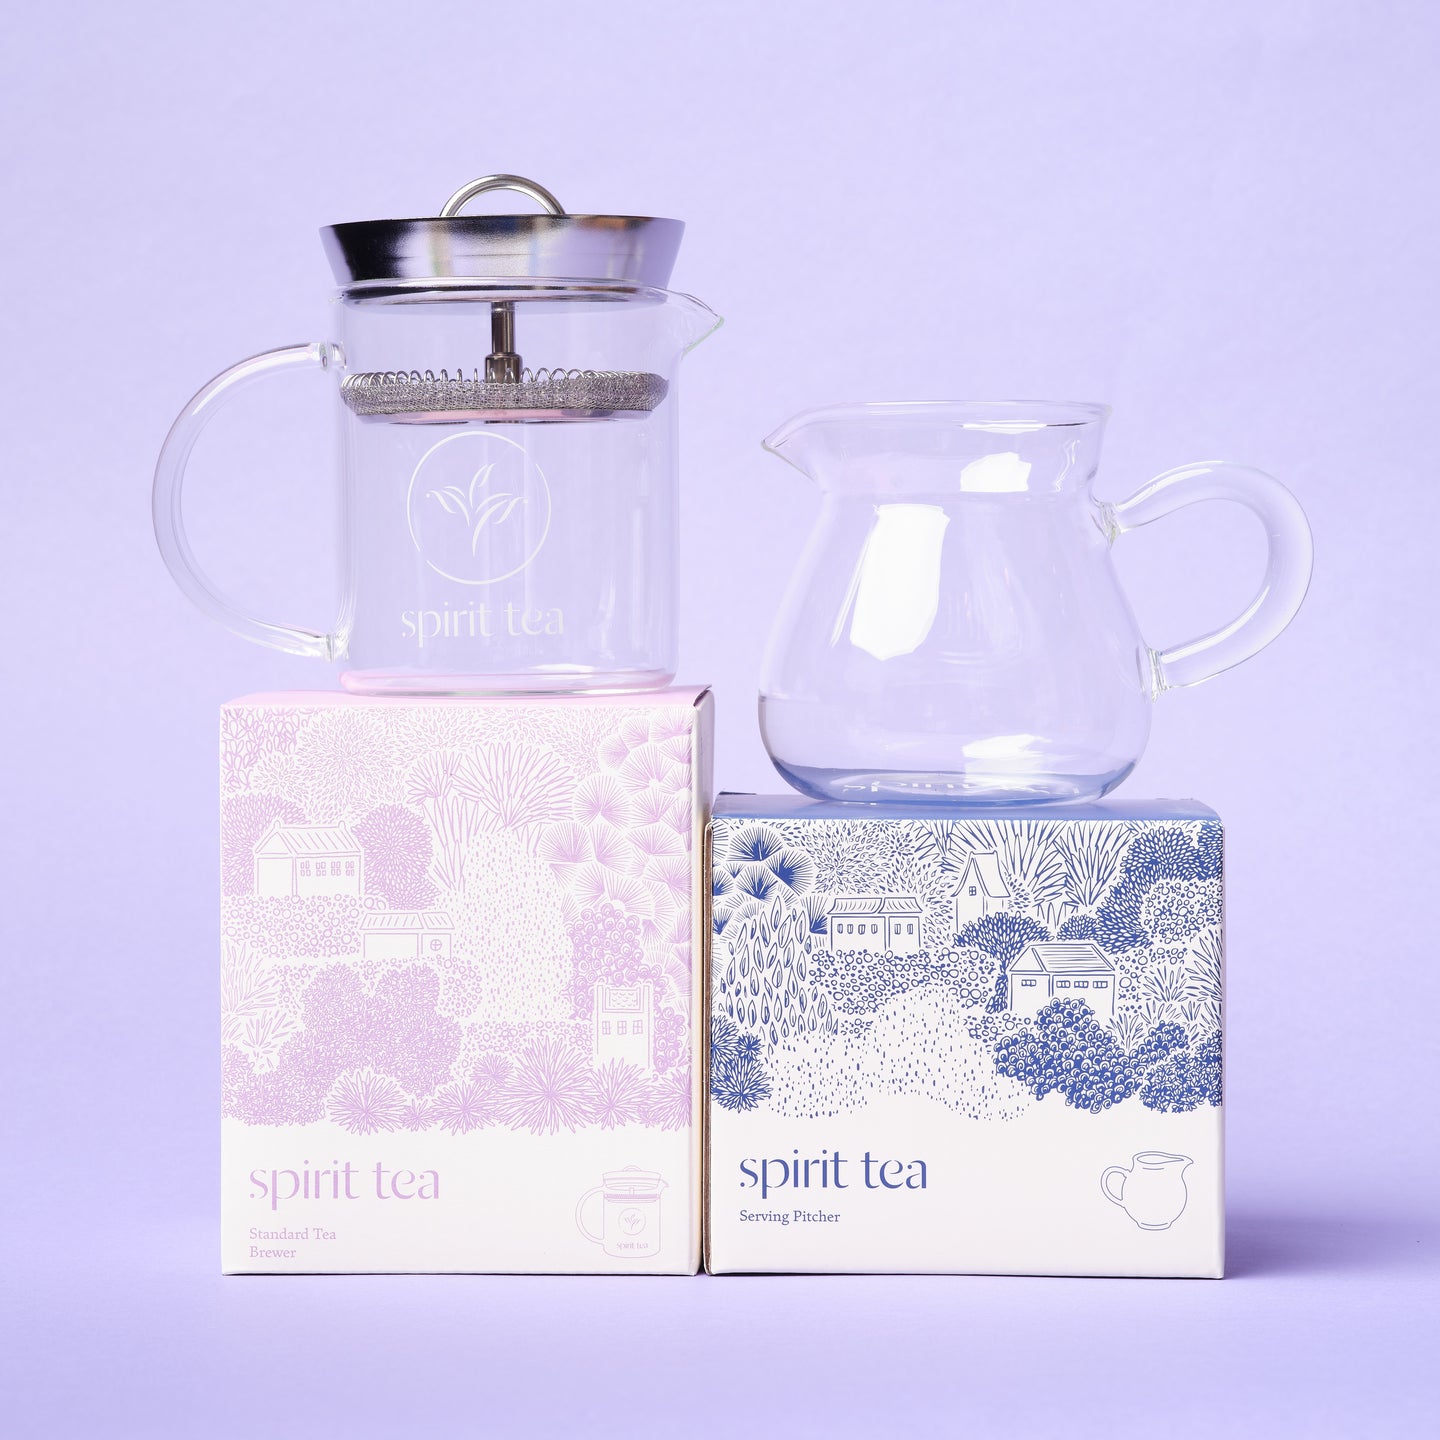 Spirit Tea, Tea Serving Pitcher, Cha Hai / Gong Dao Bei